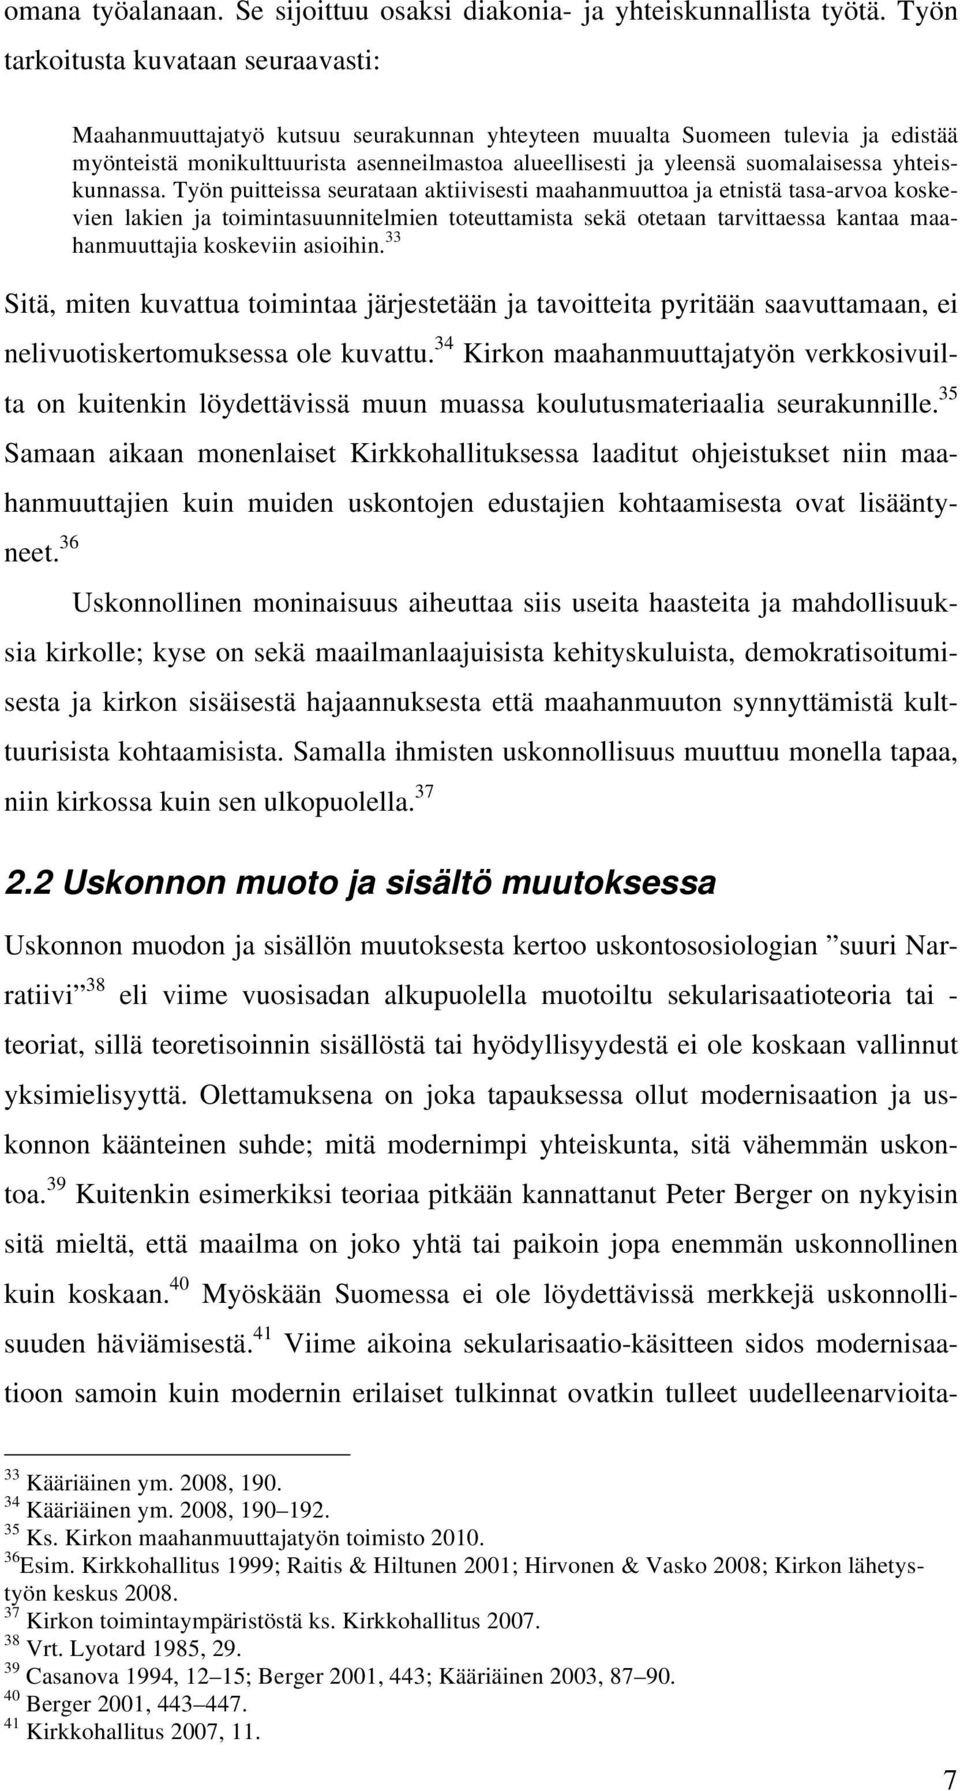 suomalaisessa yhteiskunnassa.